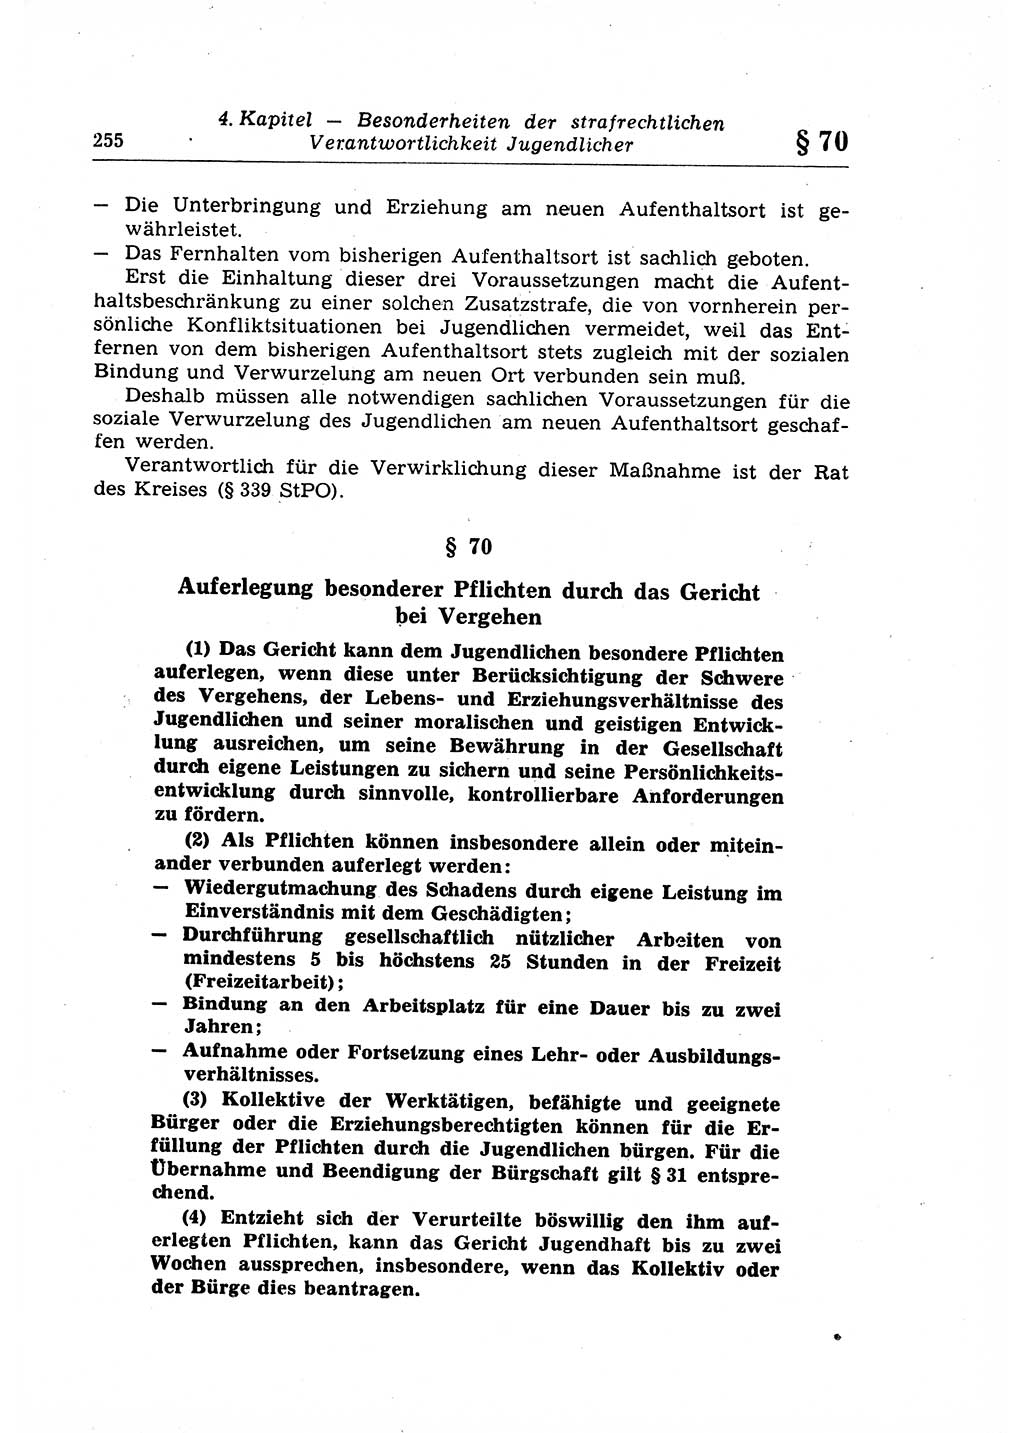 Strafrecht der Deutschen Demokratischen Republik (DDR), Lehrkommentar zum Strafgesetzbuch (StGB), Allgemeiner Teil 1969, Seite 255 (Strafr. DDR Lehrkomm. StGB AT 1969, S. 255)